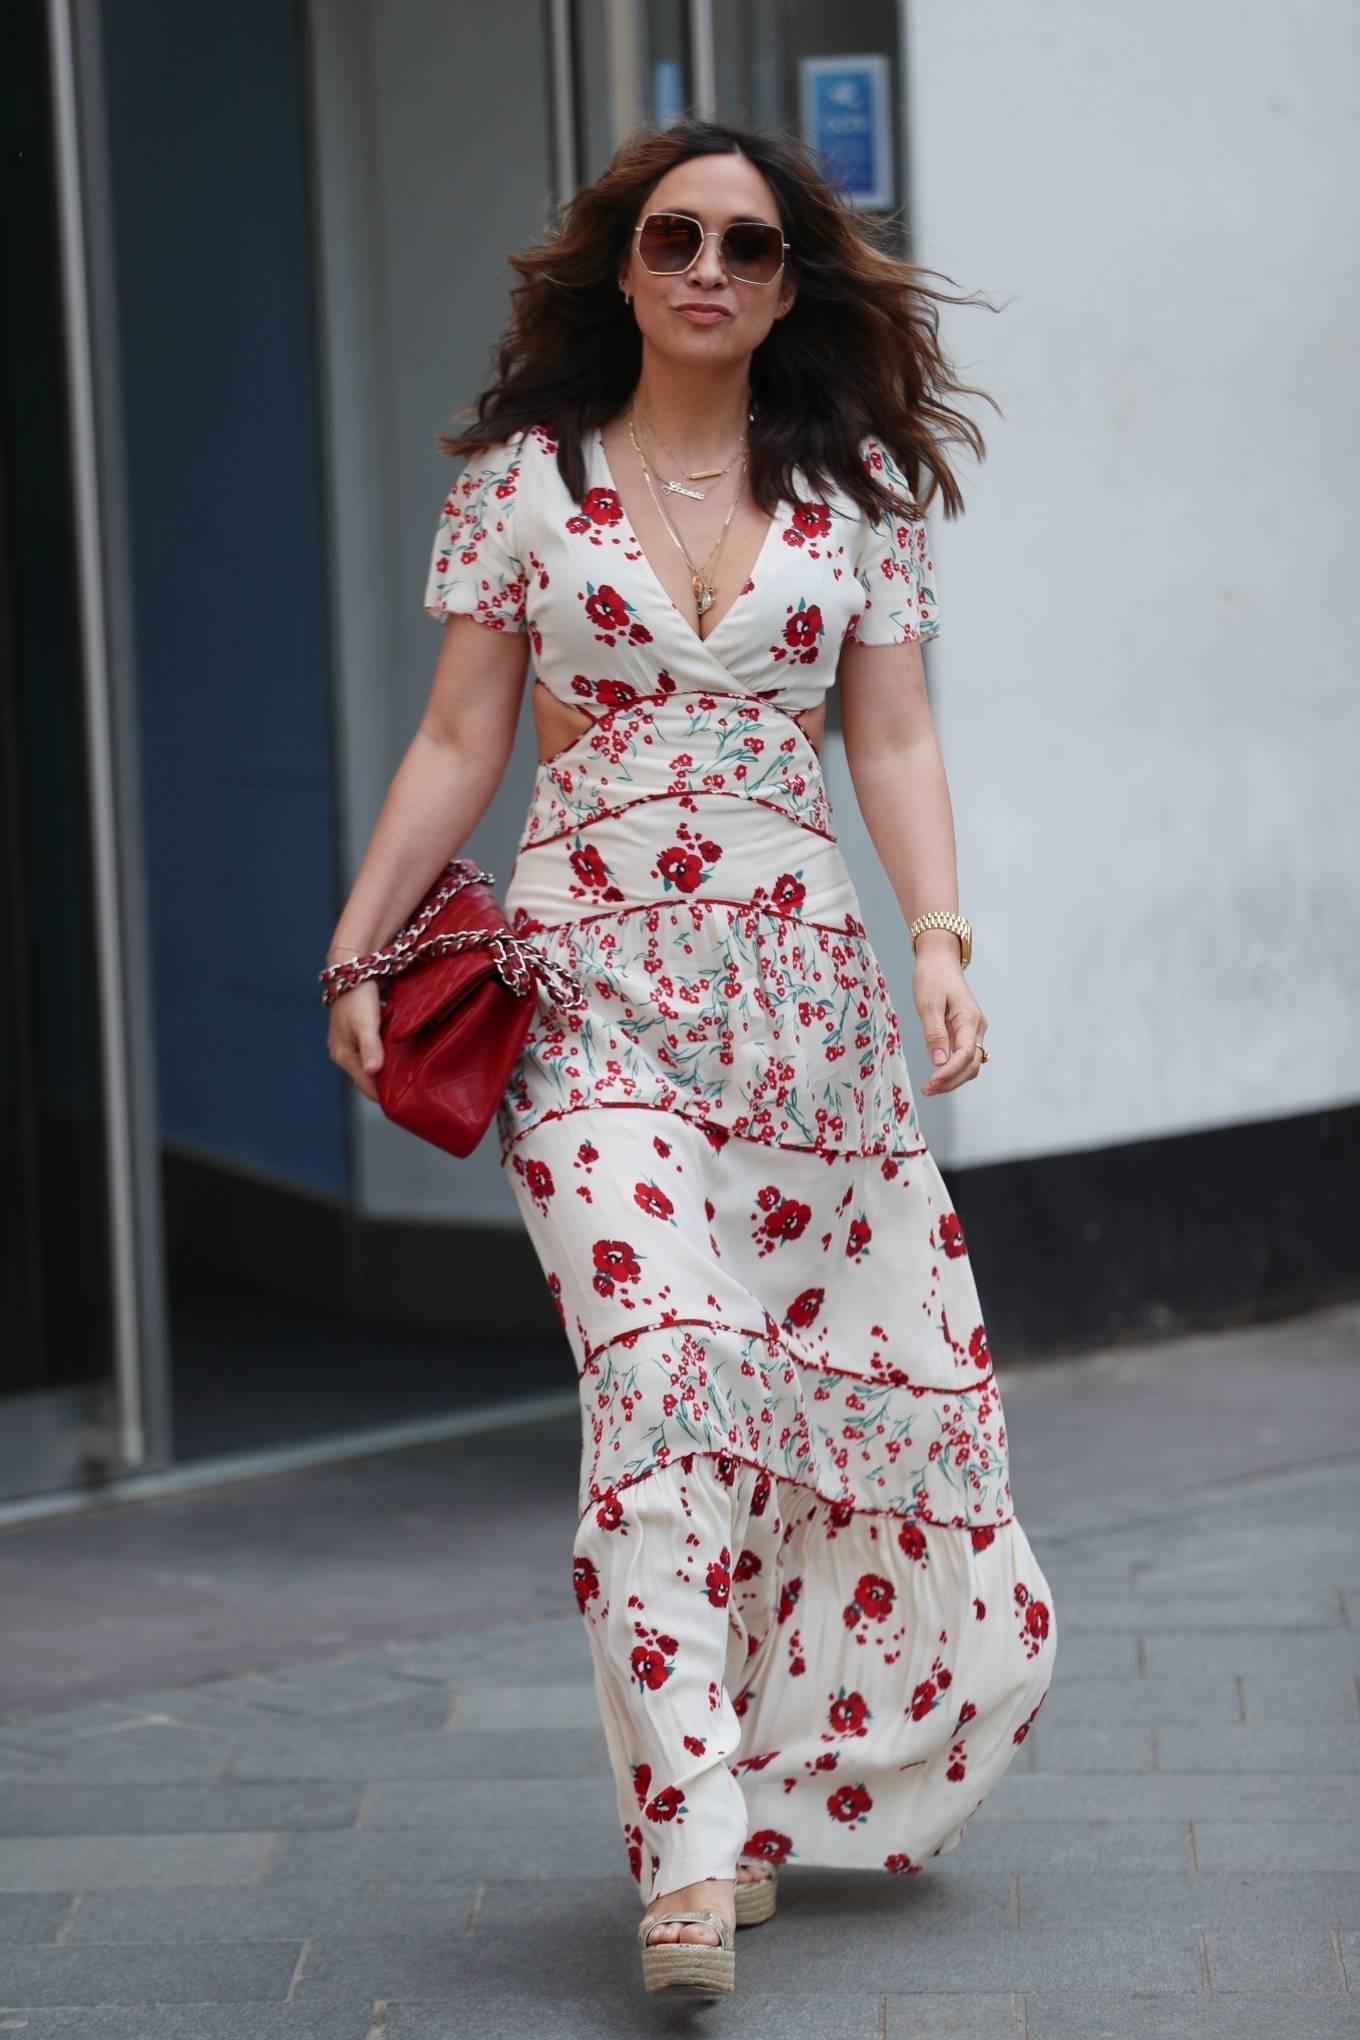 Myleene Klass â€“ Wearing floral dress leaving the Smooth Radio Studios in London